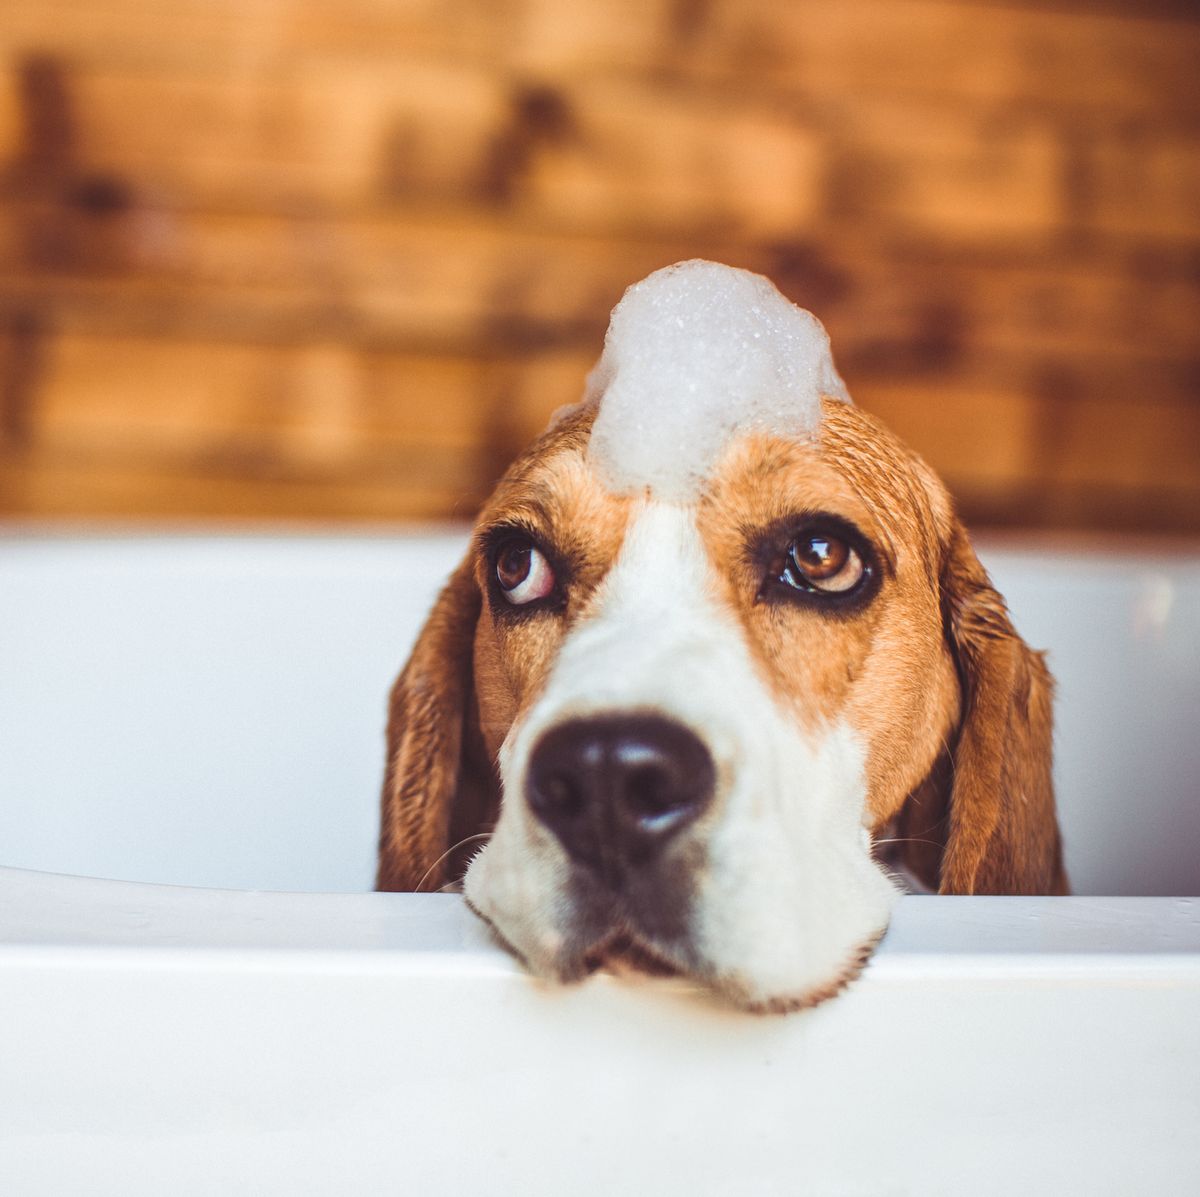 Beagle dog having a bath